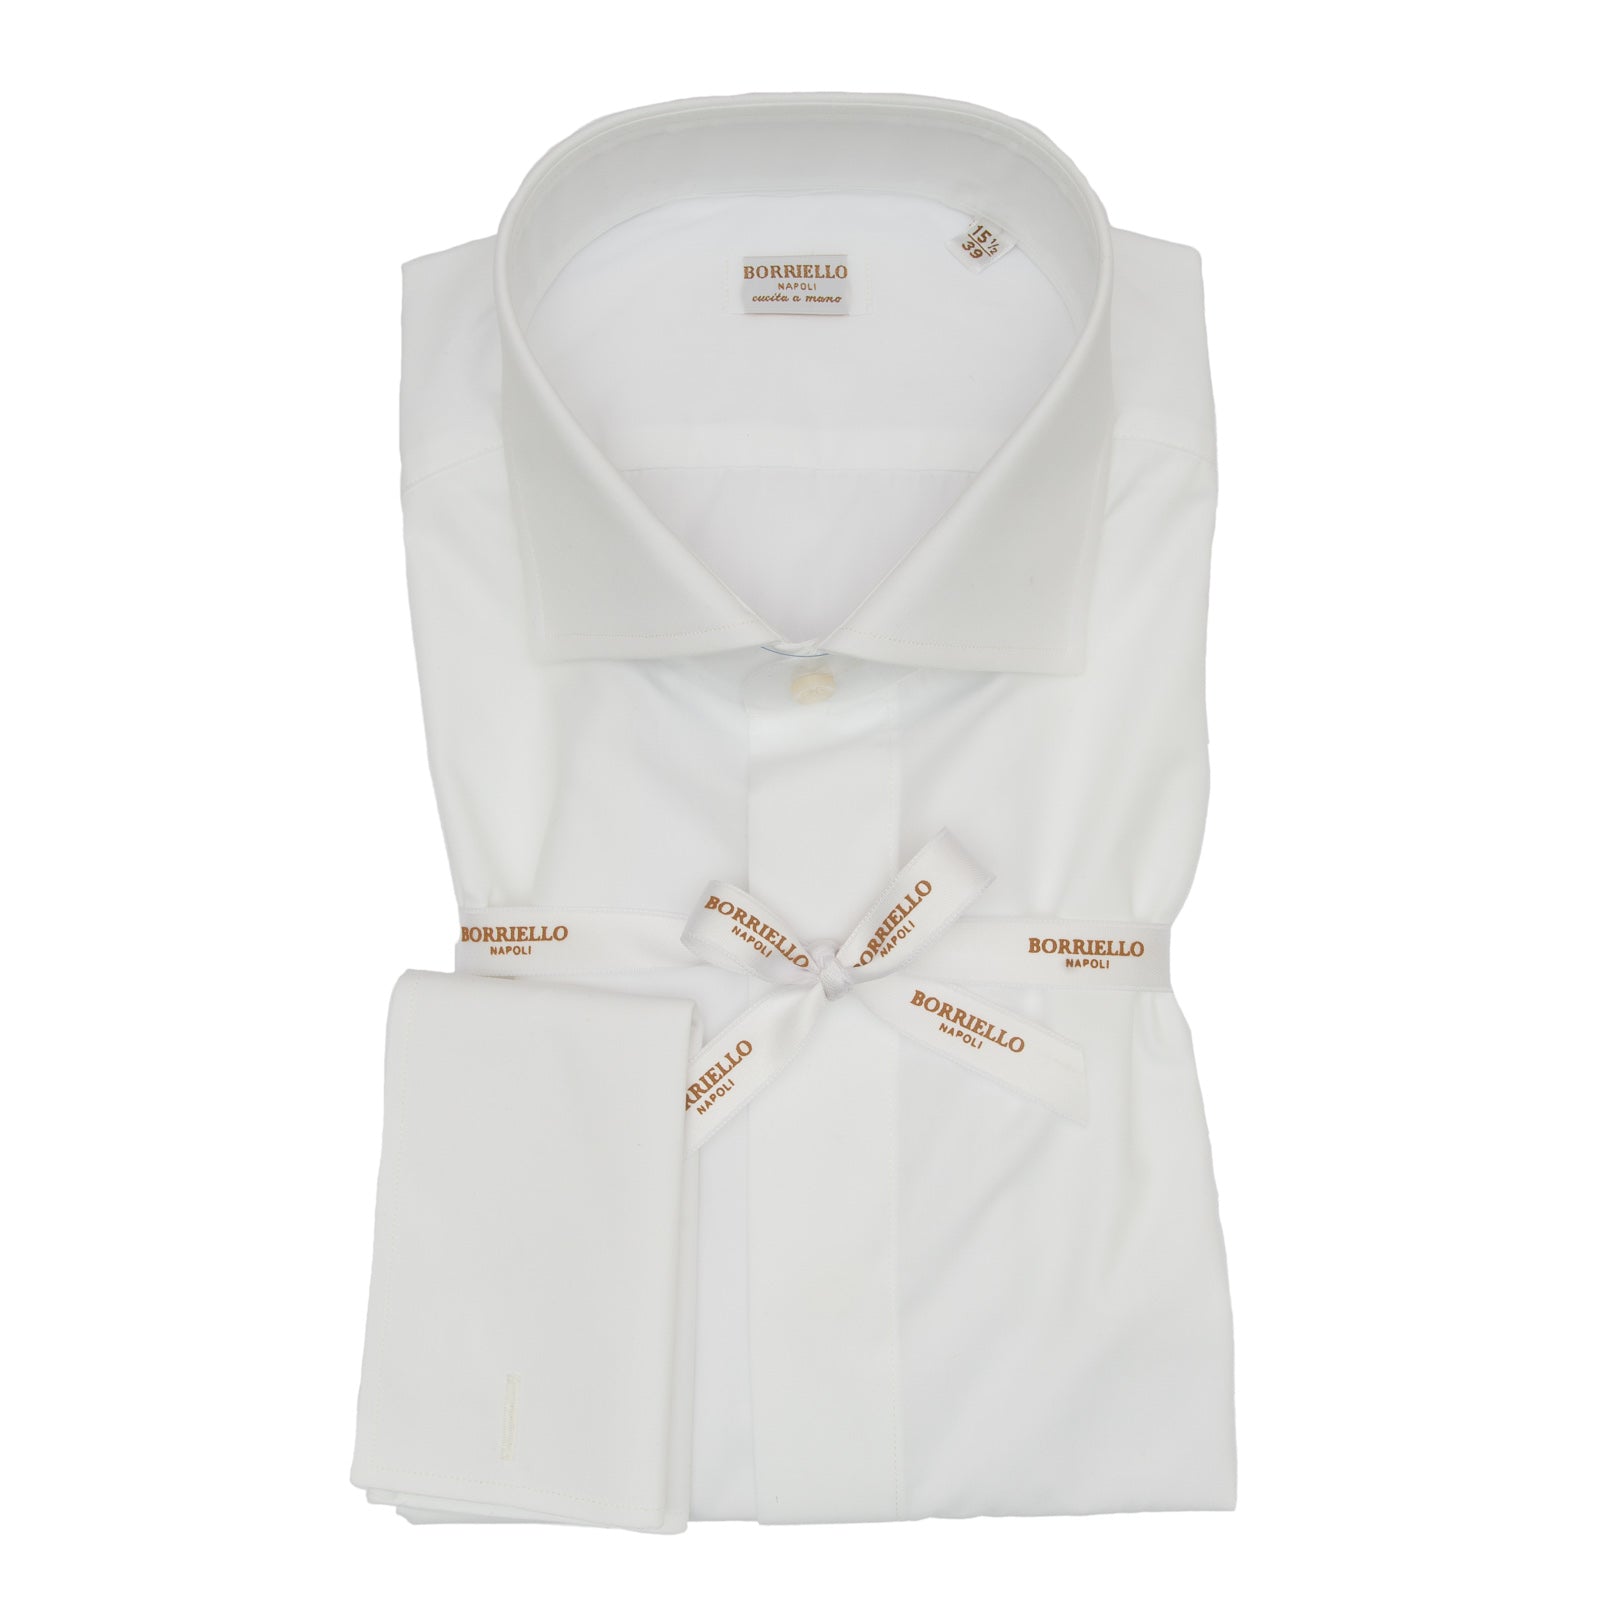 Camicia BORRIELLO
Bianco